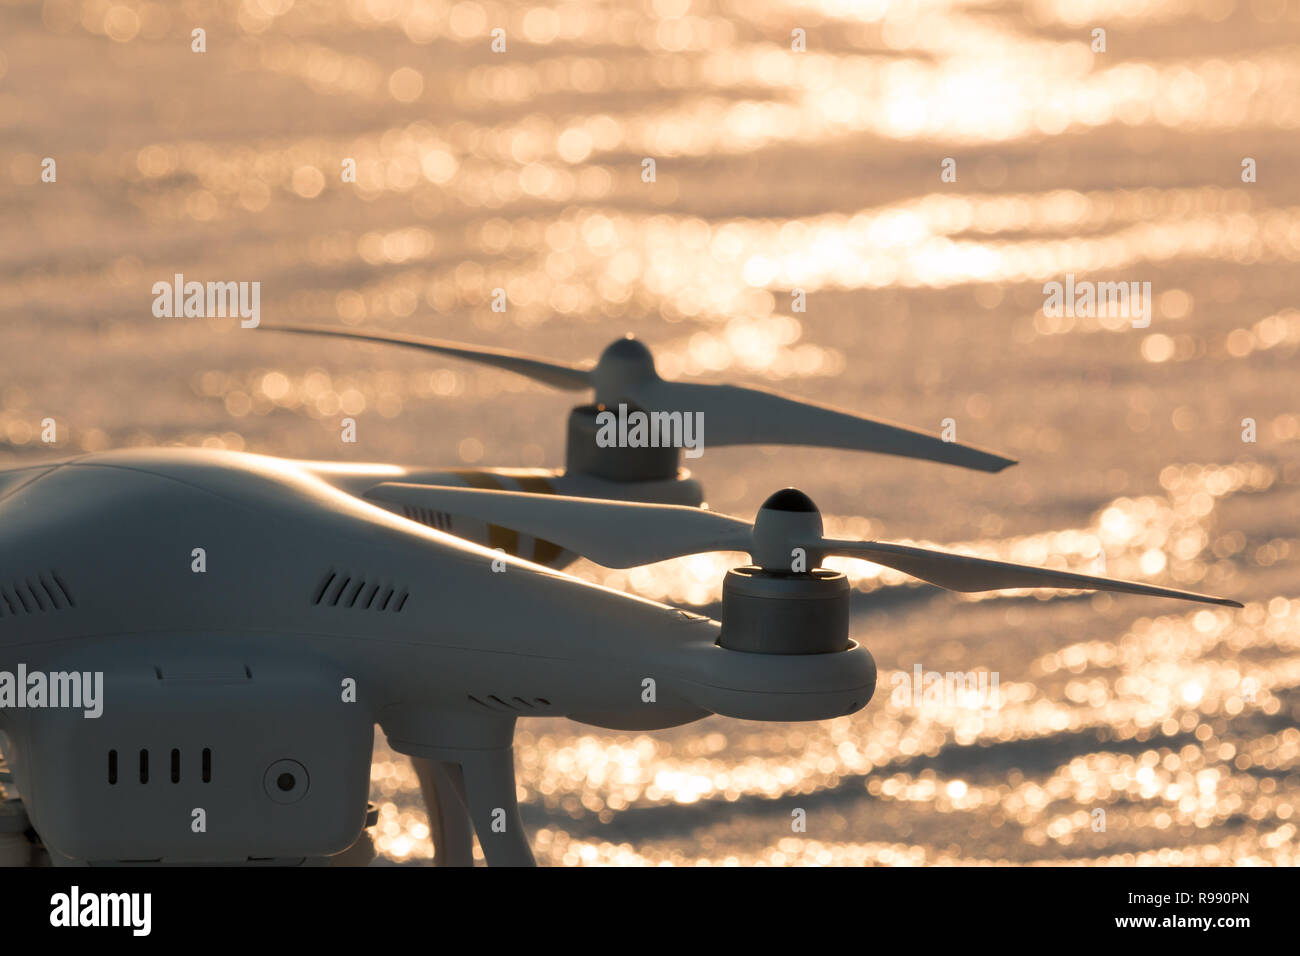 Les hélices d'un drone multicopter, lac gelé dans l'arrière-plan. Banque D'Images